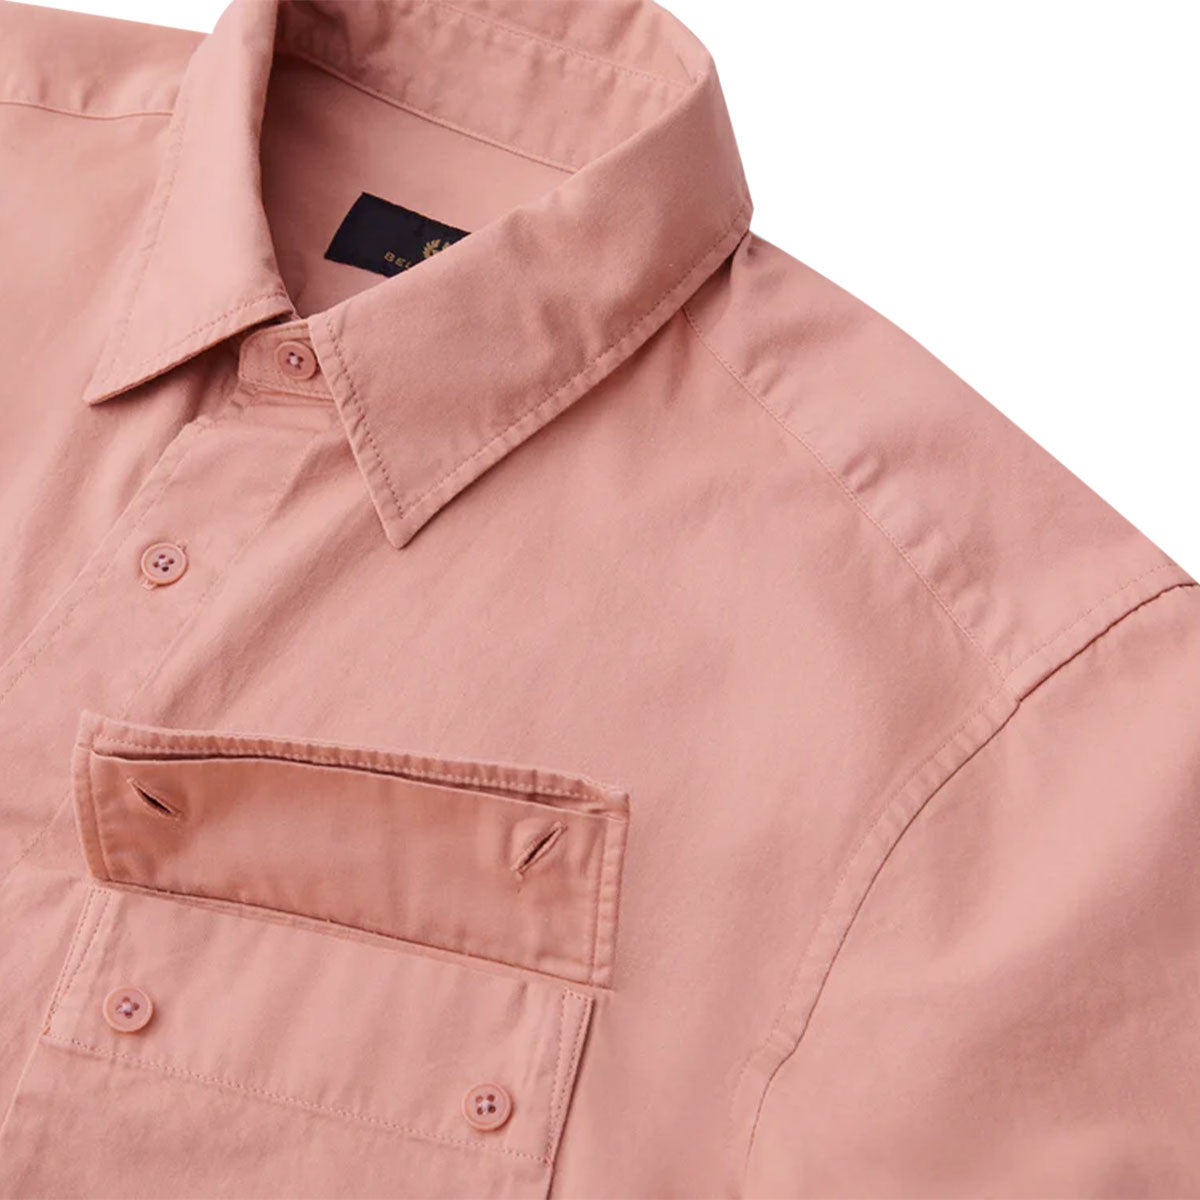 Scale Rust Pink Short Sleeve Shirt Short Sleeve Belstaff   